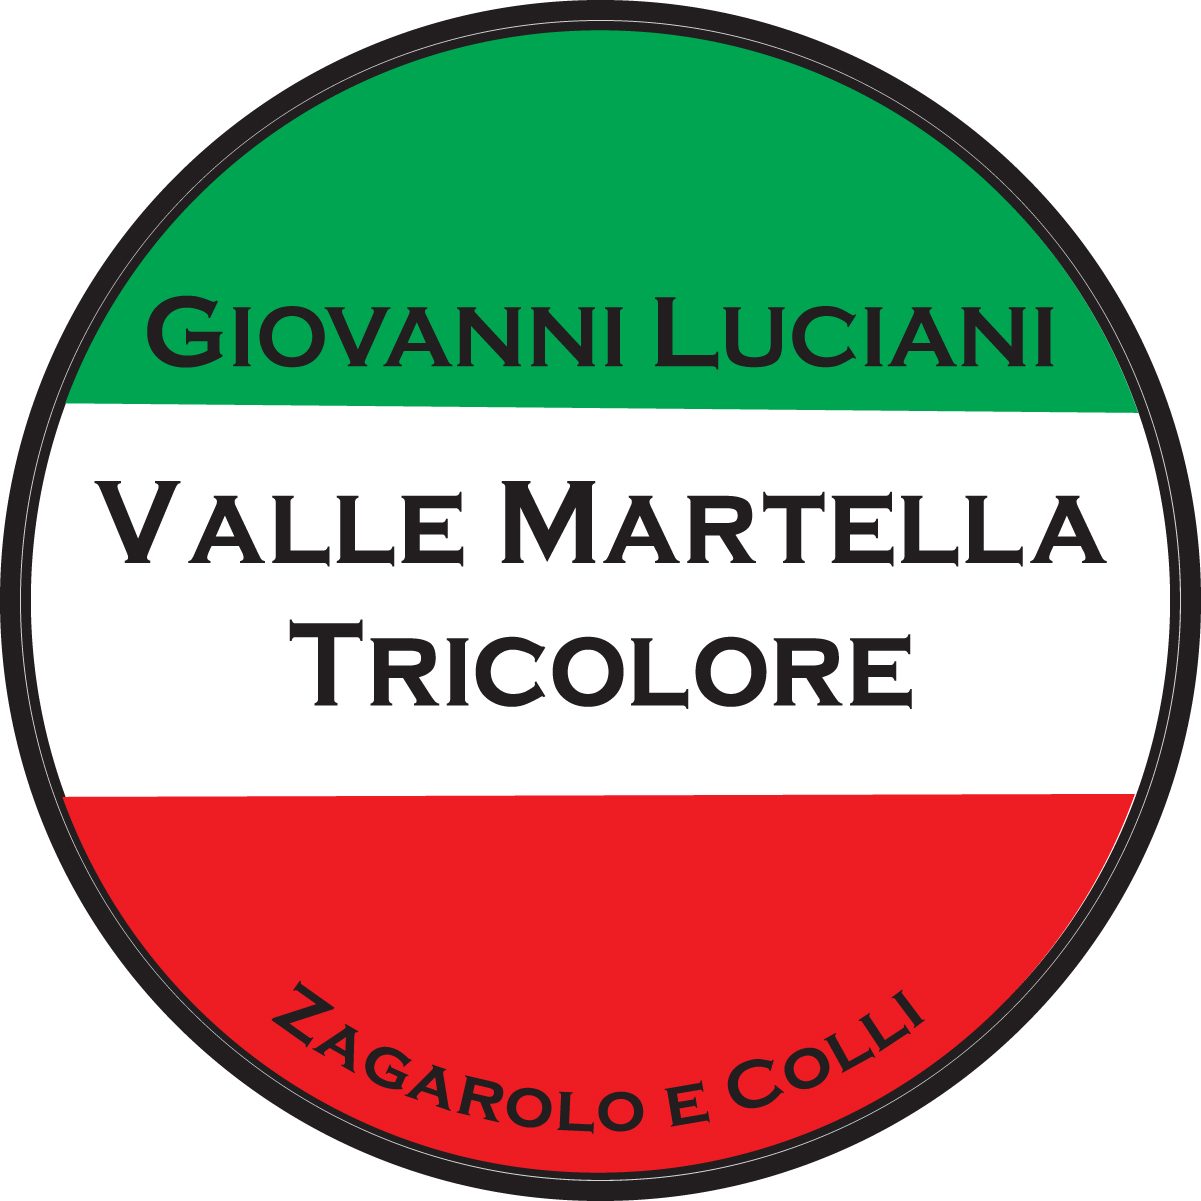 VALLE MARTELLA TRICOLORE